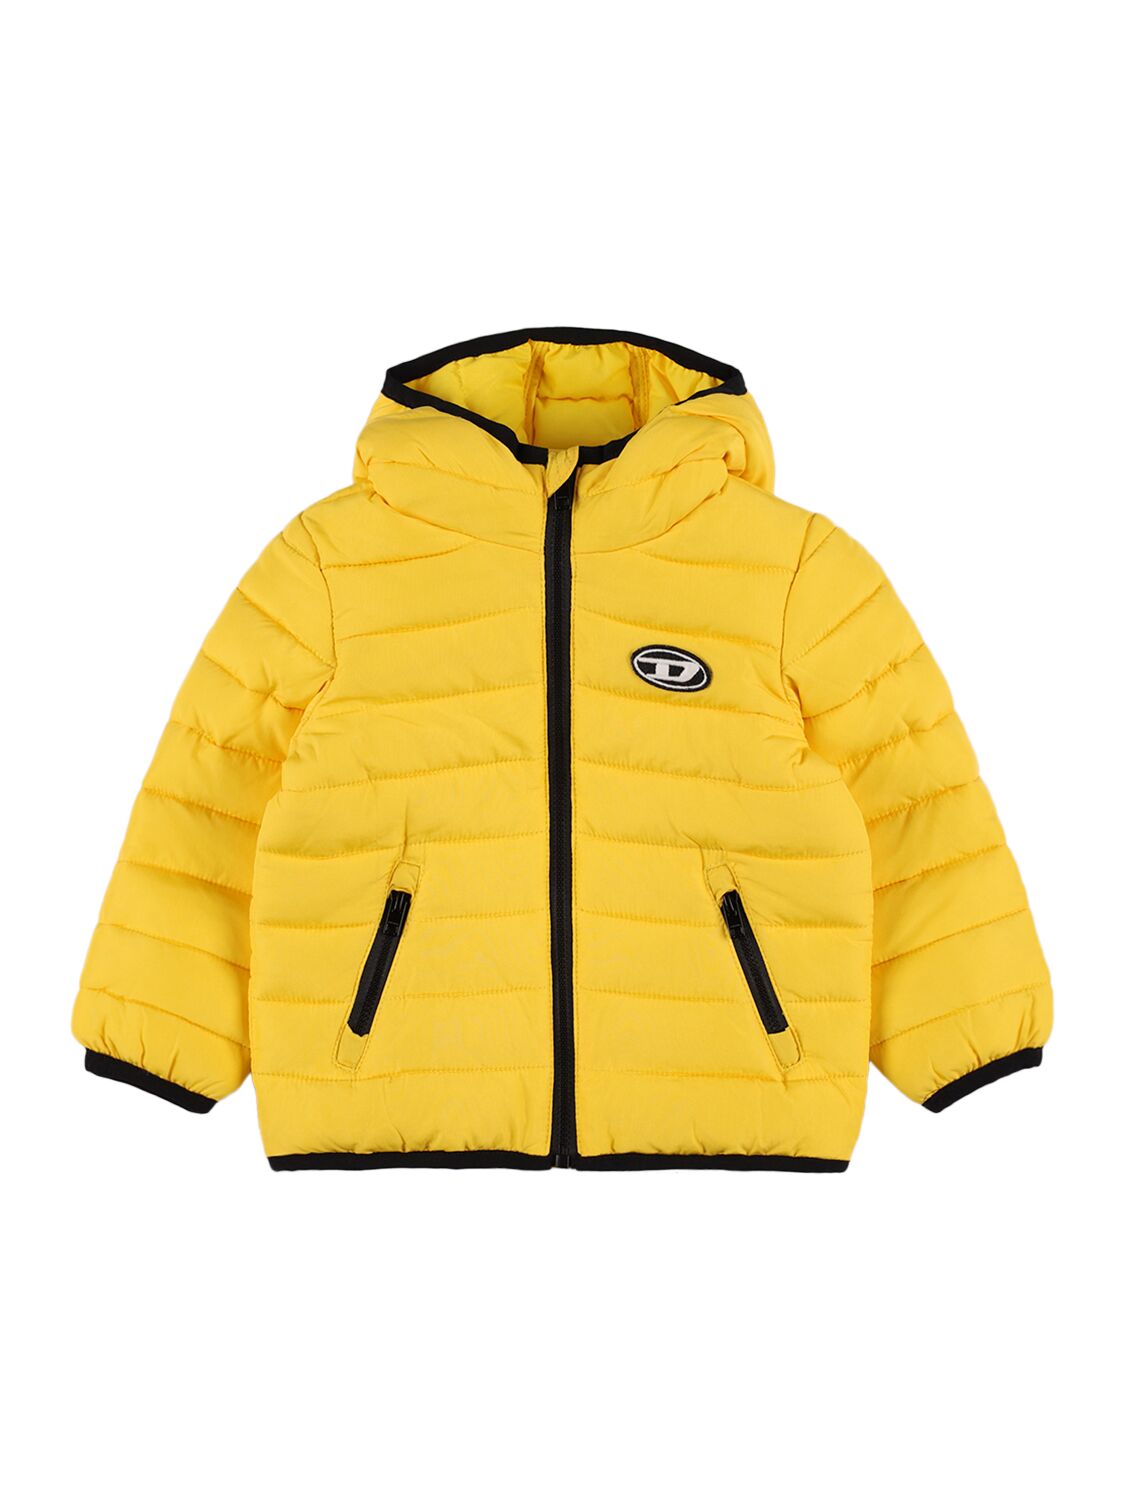 Diesel Kids' Nylon Puffer Jacket W/ Logo In Yellow